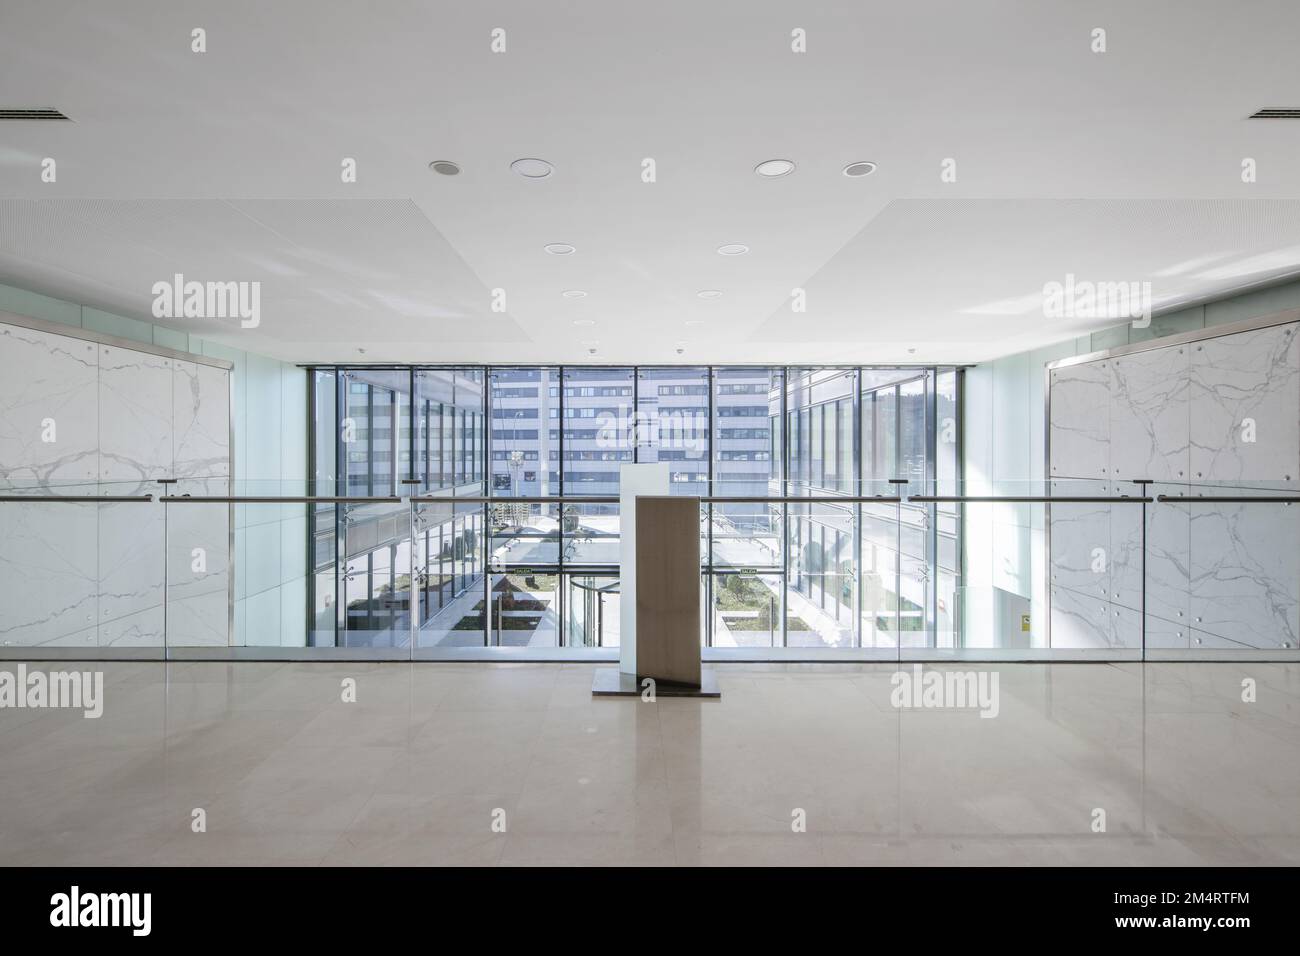 Atrium d'un immeuble de bureaux avec murs carrelés de marbre vert, sol en marbre crème, vue depuis une fenêtre en mezzanine avec balustrade en verre Banque D'Images